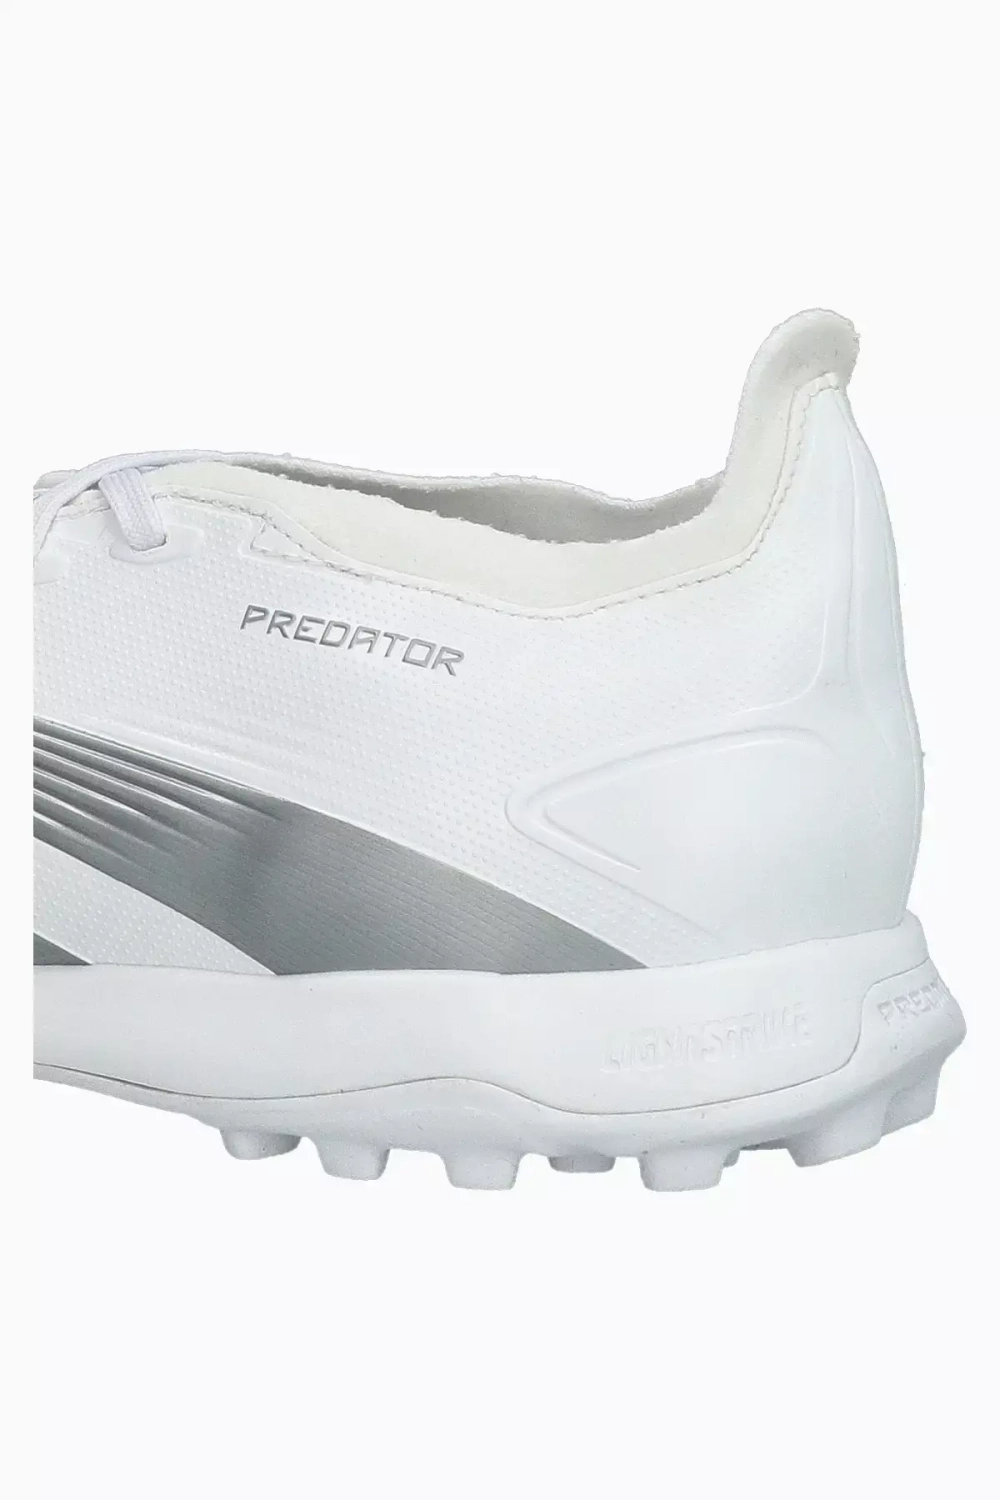 Сороконожки adidas Predator League TF